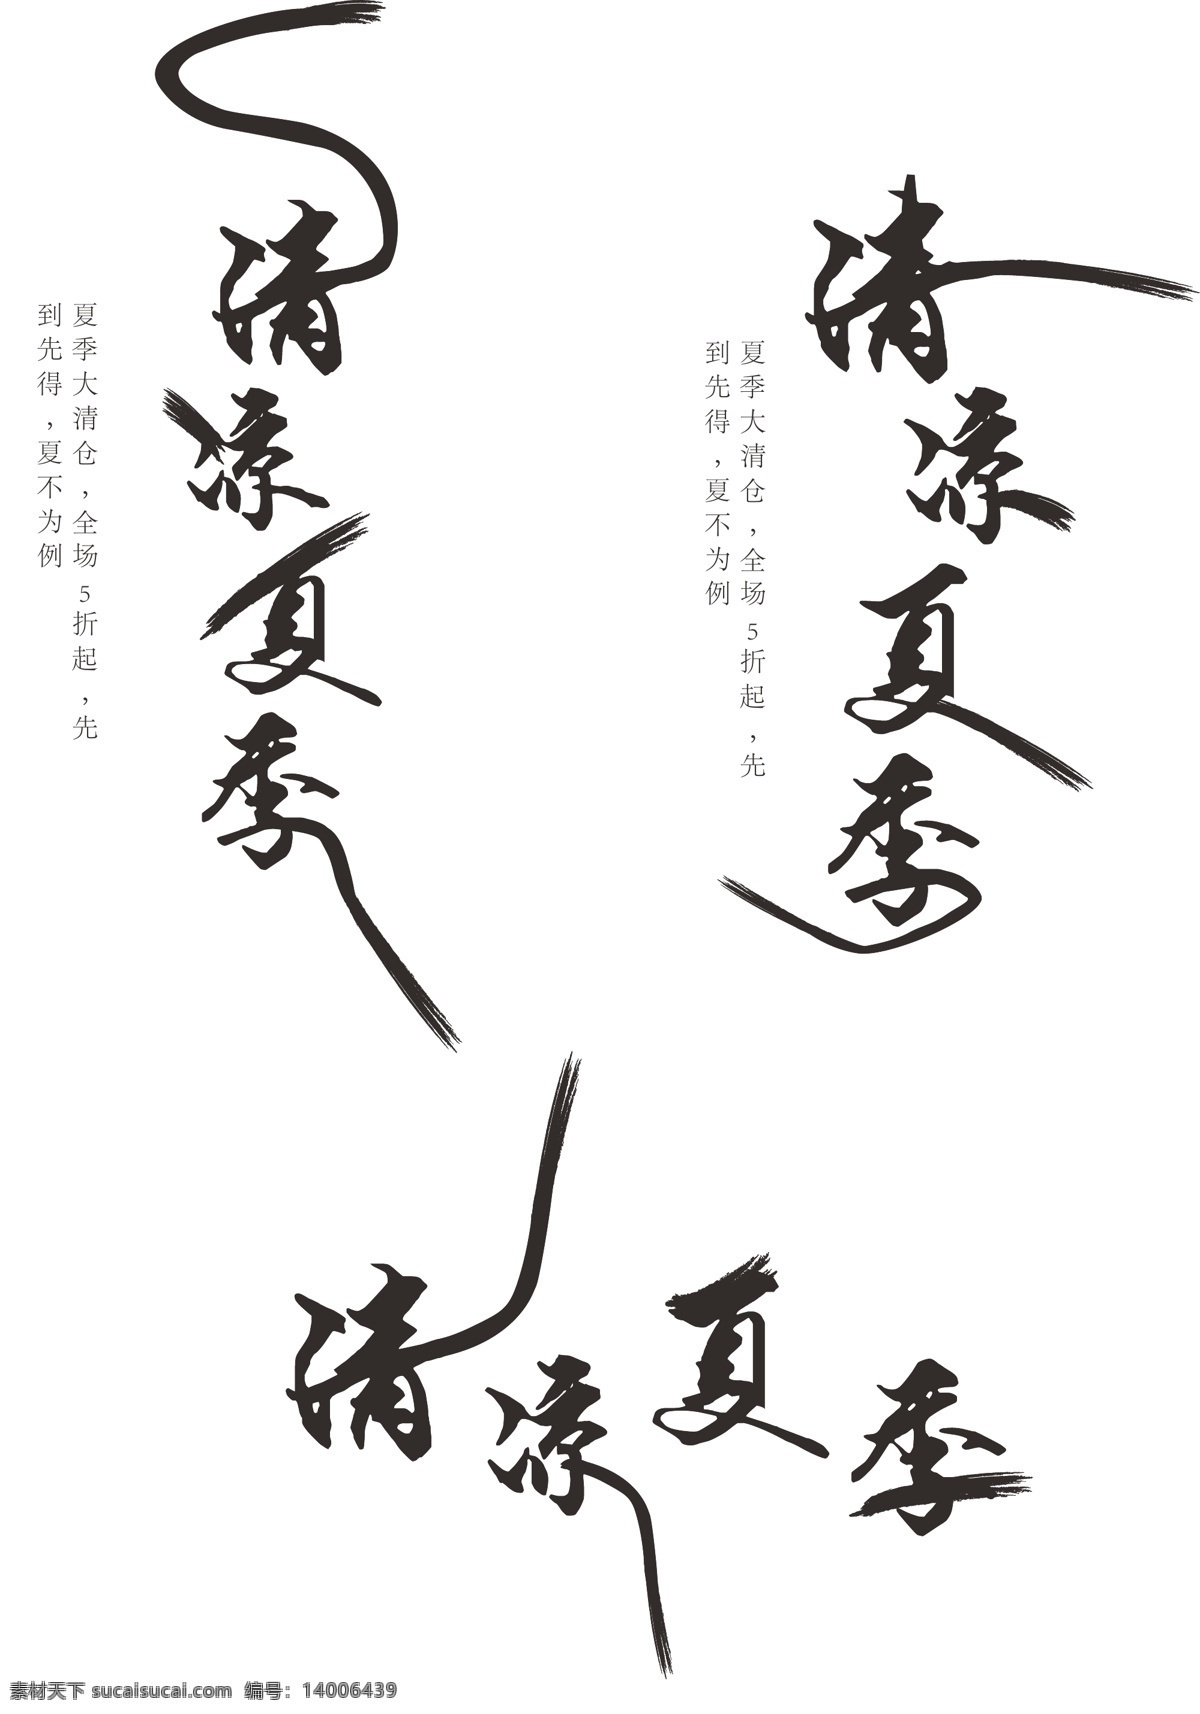 原创 中国 风 清凉 夏季 艺术 字体 中国风 黑色 毛笔字 水墨风 清凉夏季 艺术字体设计 黑色字体 创意毛笔字